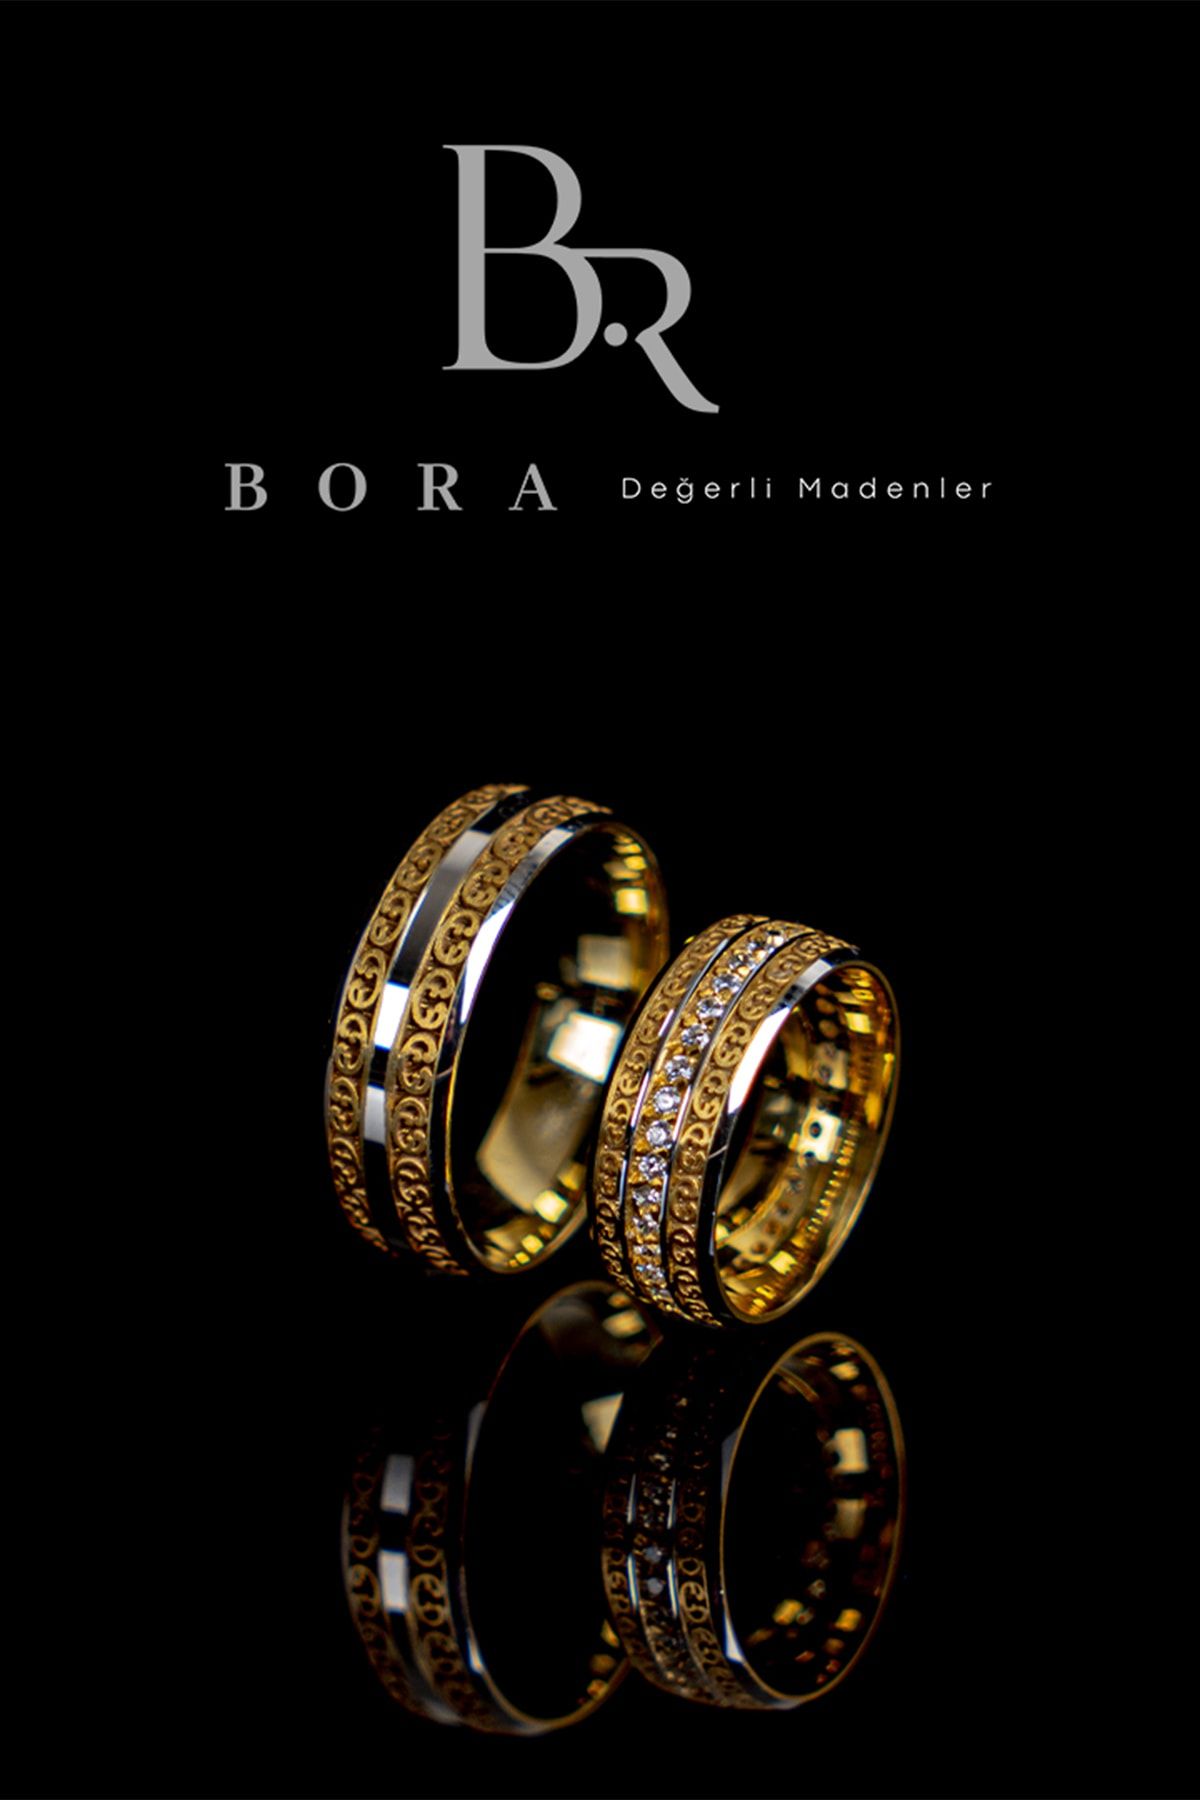 Bora Değerli Madenler Gümüş Işlemeli Alyans Nişan Yüzüğü Çift Yüzüğü 925 Ayar